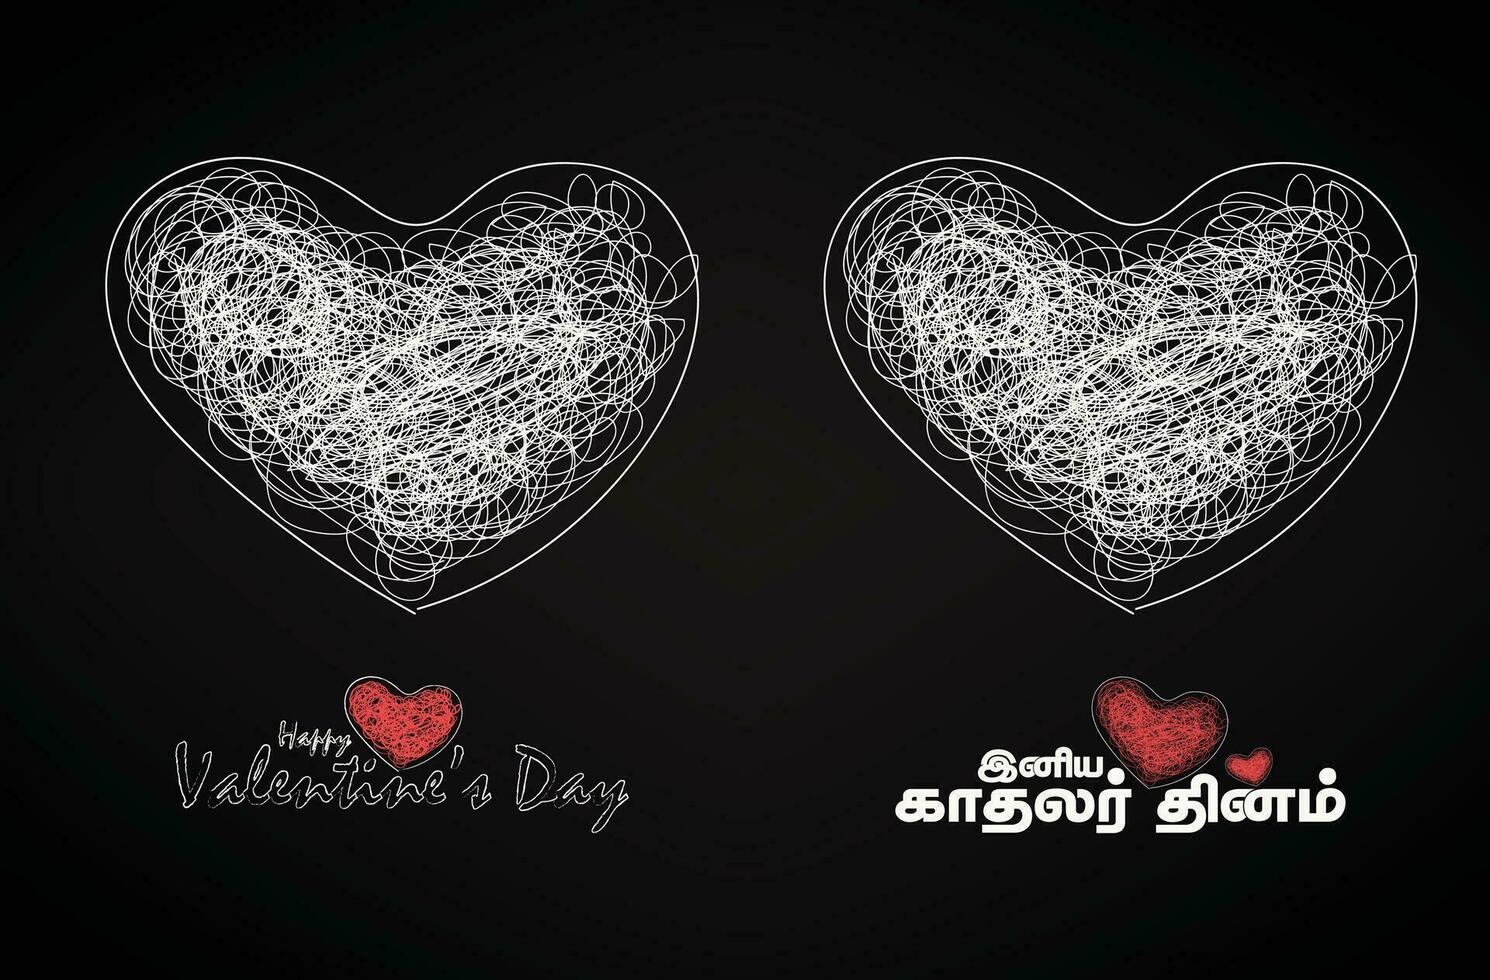 einstellen von Valentinstag Tag Text mit groß Herzen und glücklich Valentinstag Tag Übersetzen Tamil Text vektor